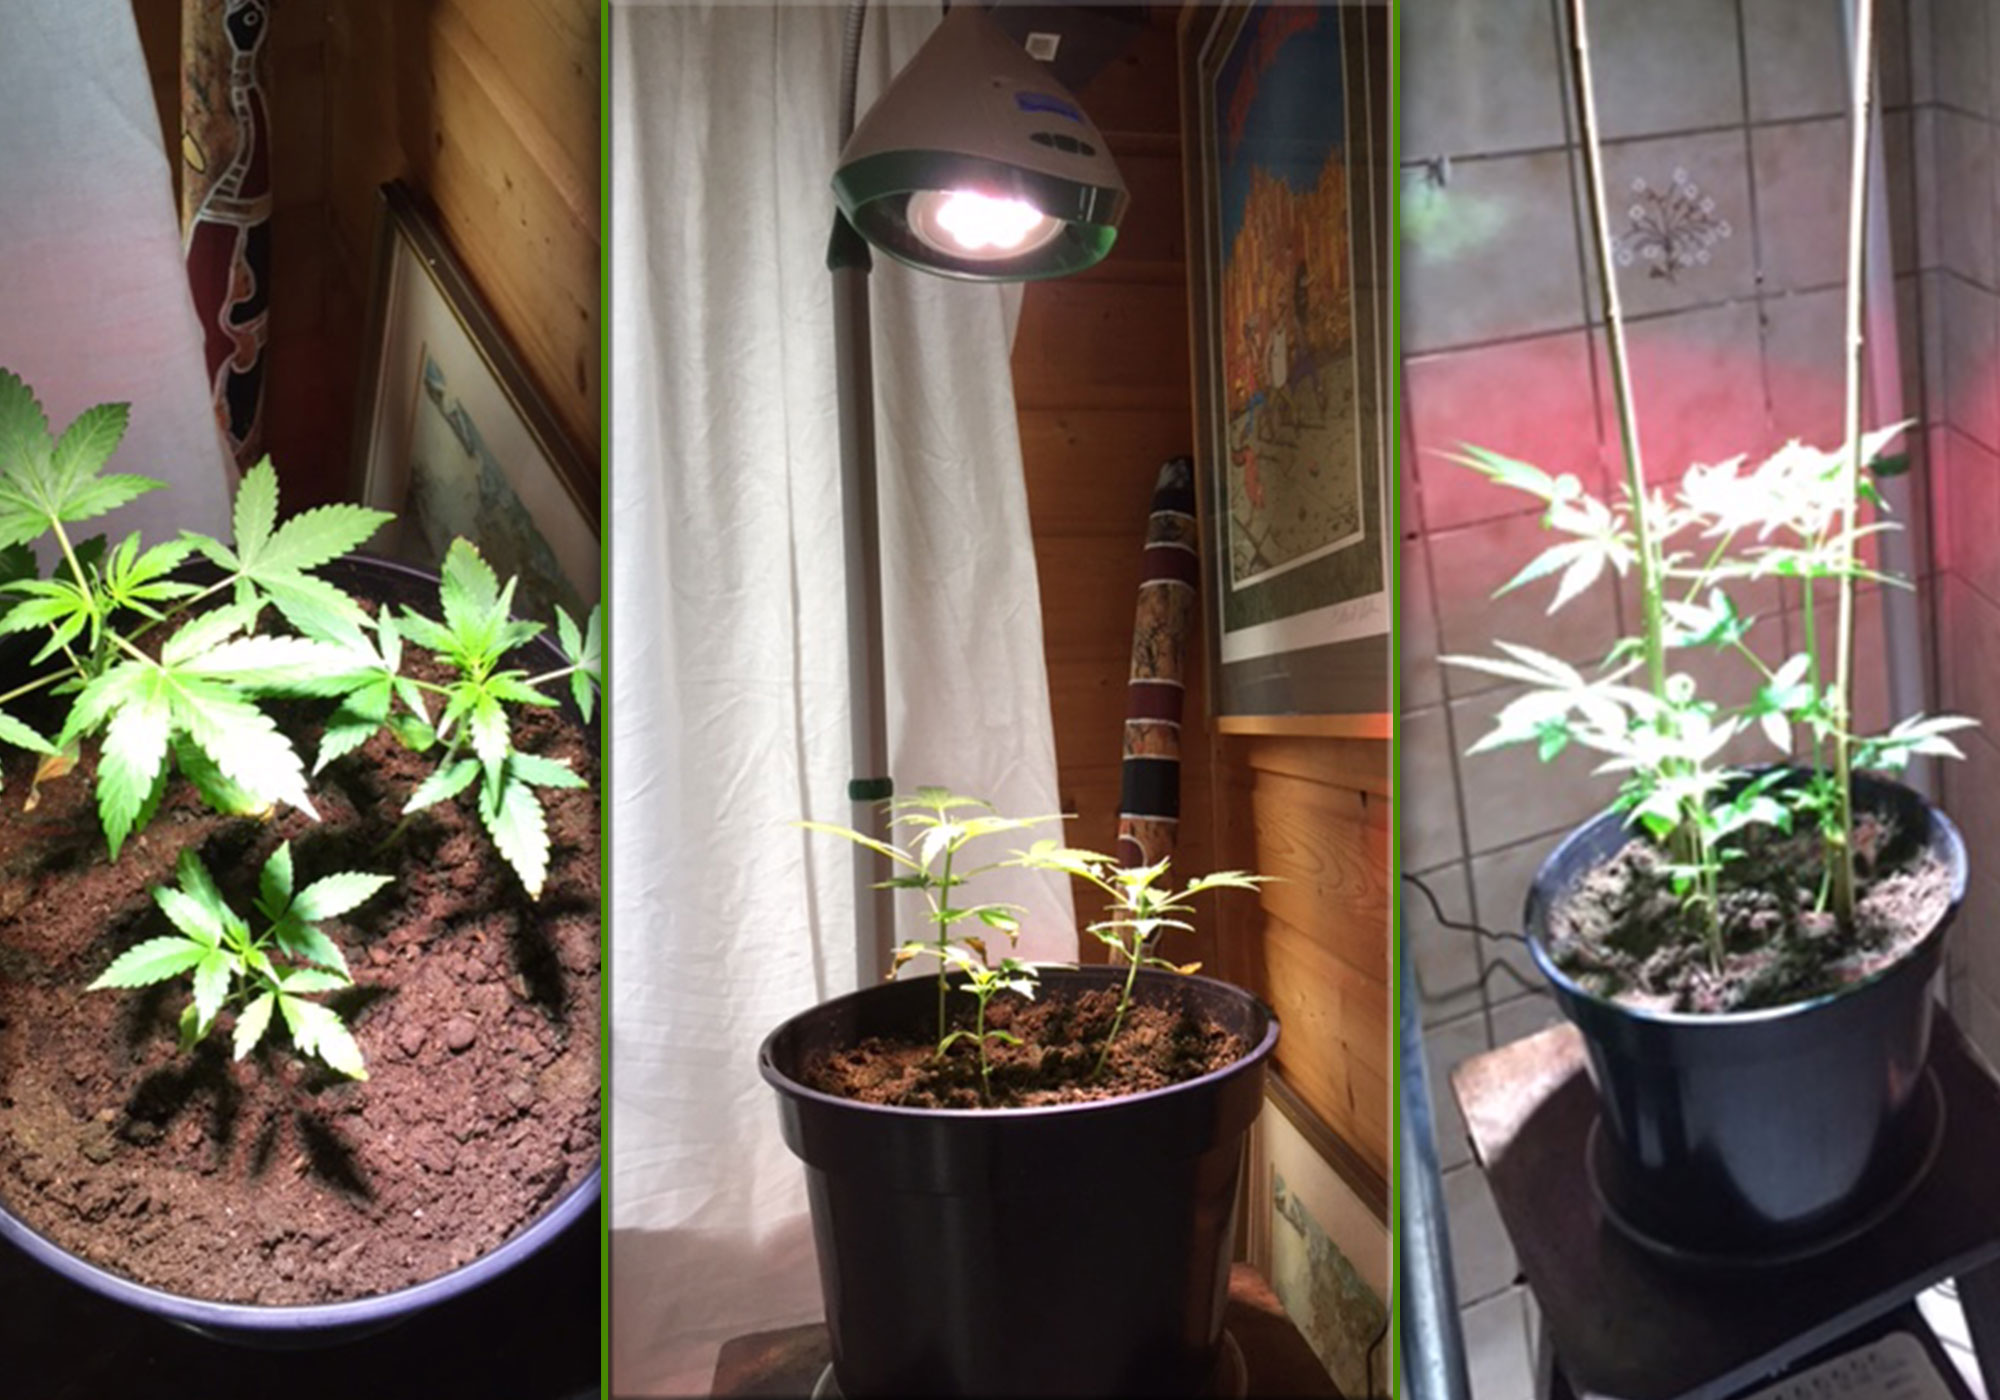 לגדל צמחים בבית בקלות - וקה סאן